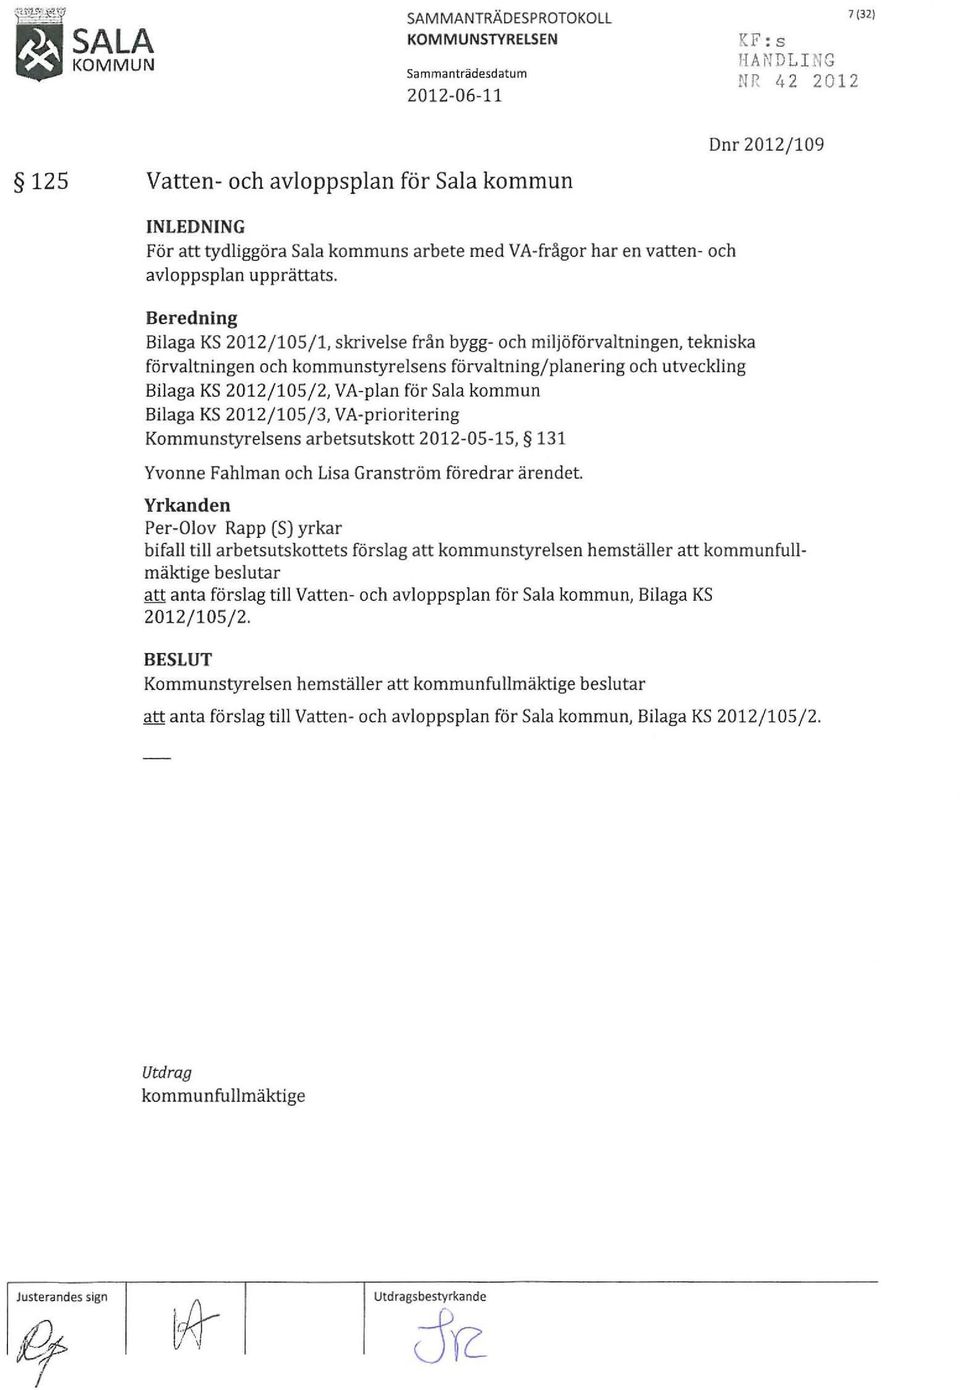 Beredning Bilaga KS 2012/ 105/ 1, skrivelse från bygg- och miljöförvaltningen, tekniska förvaltningen och kommunstyrelsens förvaltning/planering och utveckling Bilaga KS 2012/105/2, VA-plan för Sala